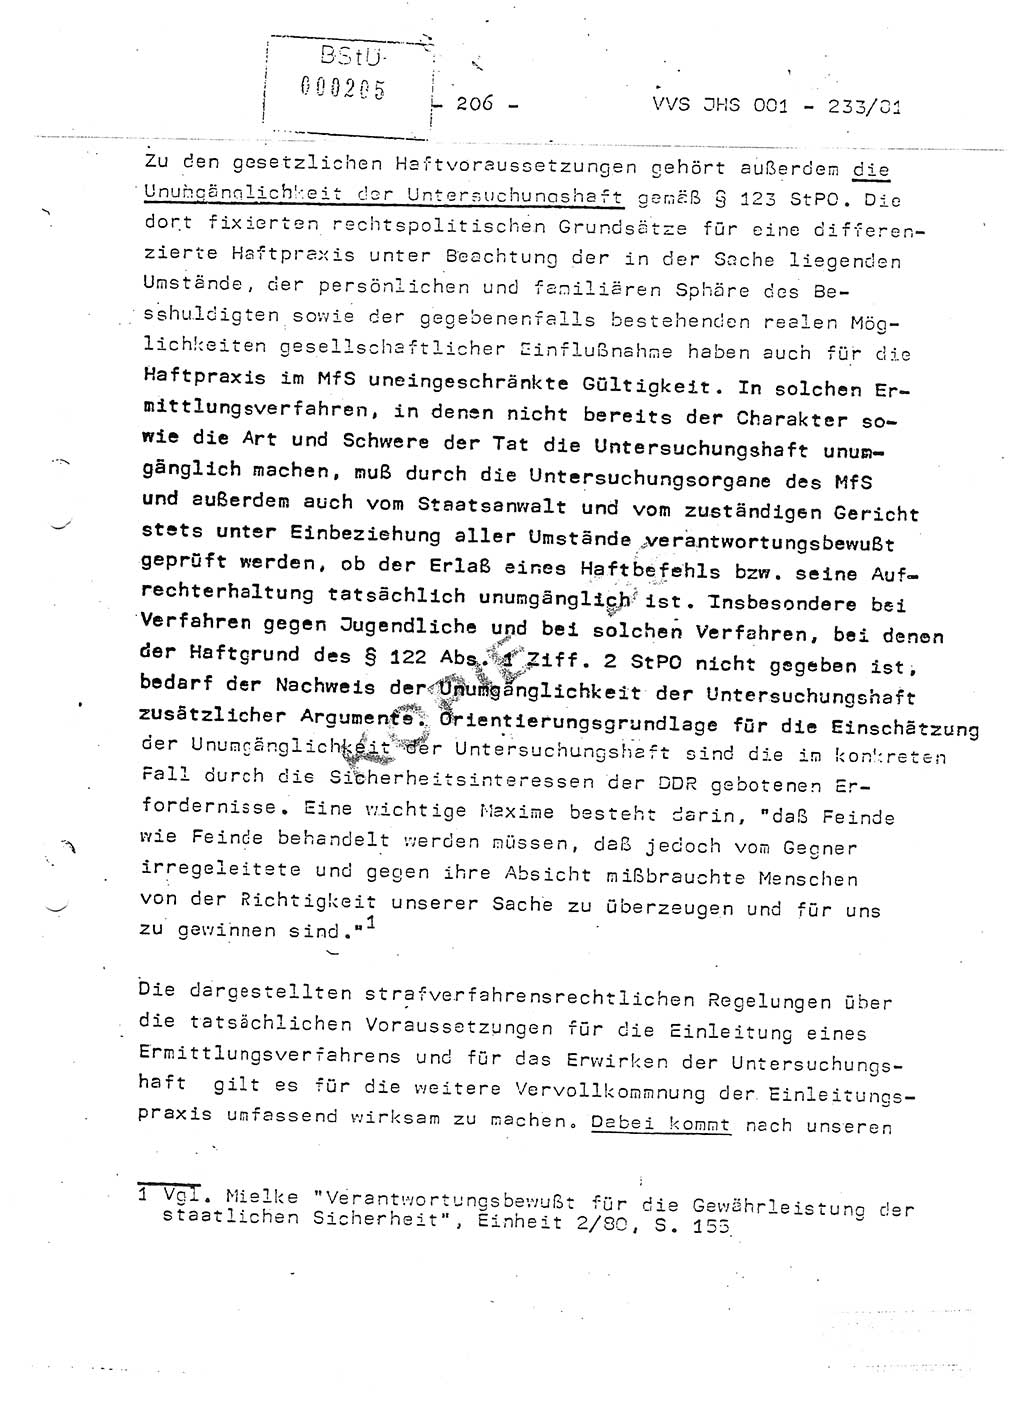 Dissertation Oberstleutnant Horst Zank (JHS), Oberstleutnant Dr. Karl-Heinz Knoblauch (JHS), Oberstleutnant Gustav-Adolf Kowalewski (HA Ⅸ), Oberstleutnant Wolfgang Plötner (HA Ⅸ), Ministerium für Staatssicherheit (MfS) [Deutsche Demokratische Republik (DDR)], Juristische Hochschule (JHS), Vertrauliche Verschlußsache (VVS) o001-233/81, Potsdam 1981, Blatt 206 (Diss. MfS DDR JHS VVS o001-233/81 1981, Bl. 206)